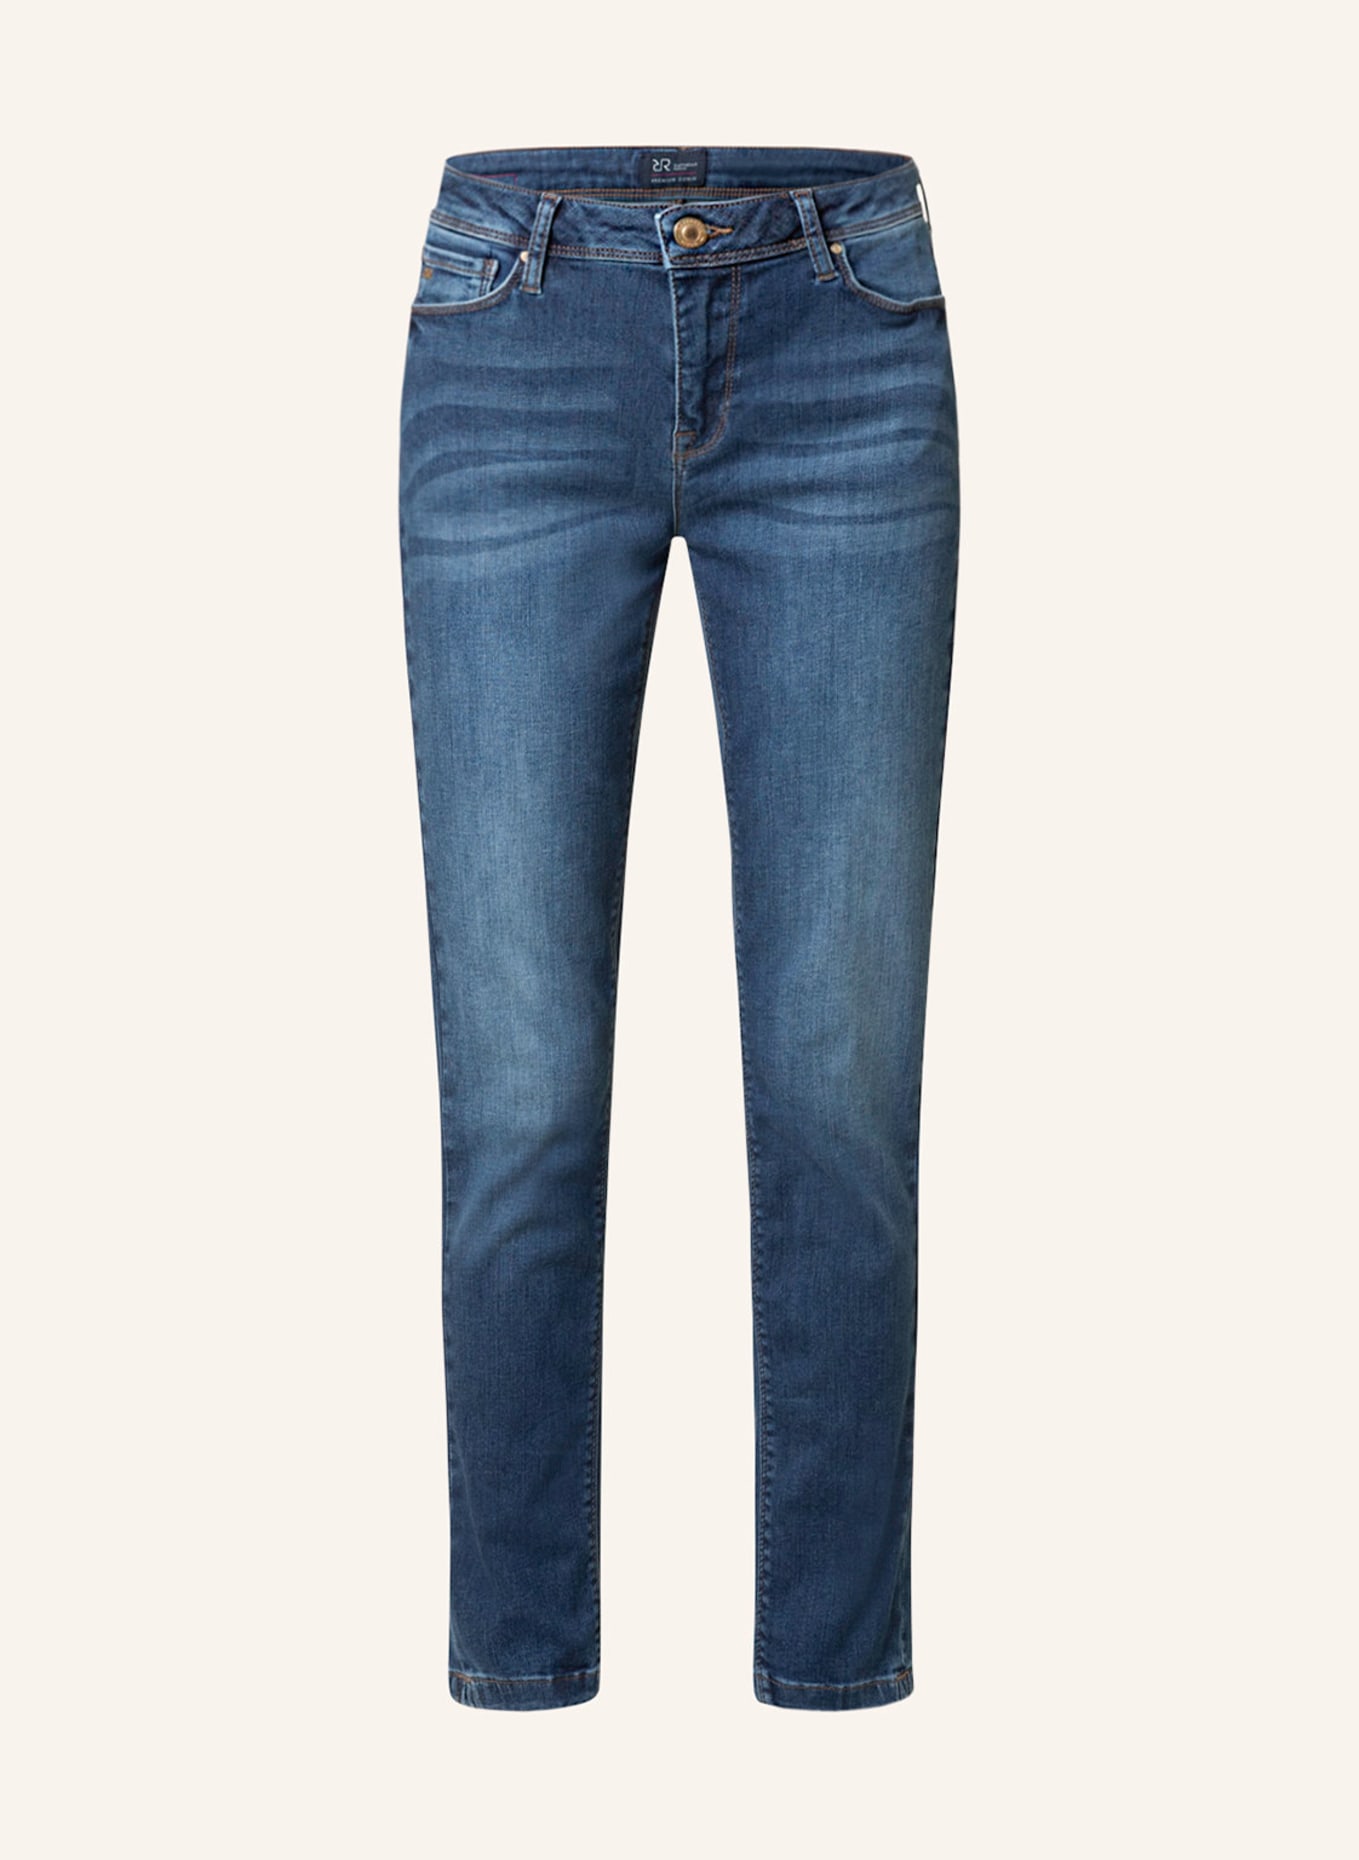 RAFFAELLO ROSSI Jeans VIC Slim Fit, Farbe: 847 jeansblue (Bild 1)